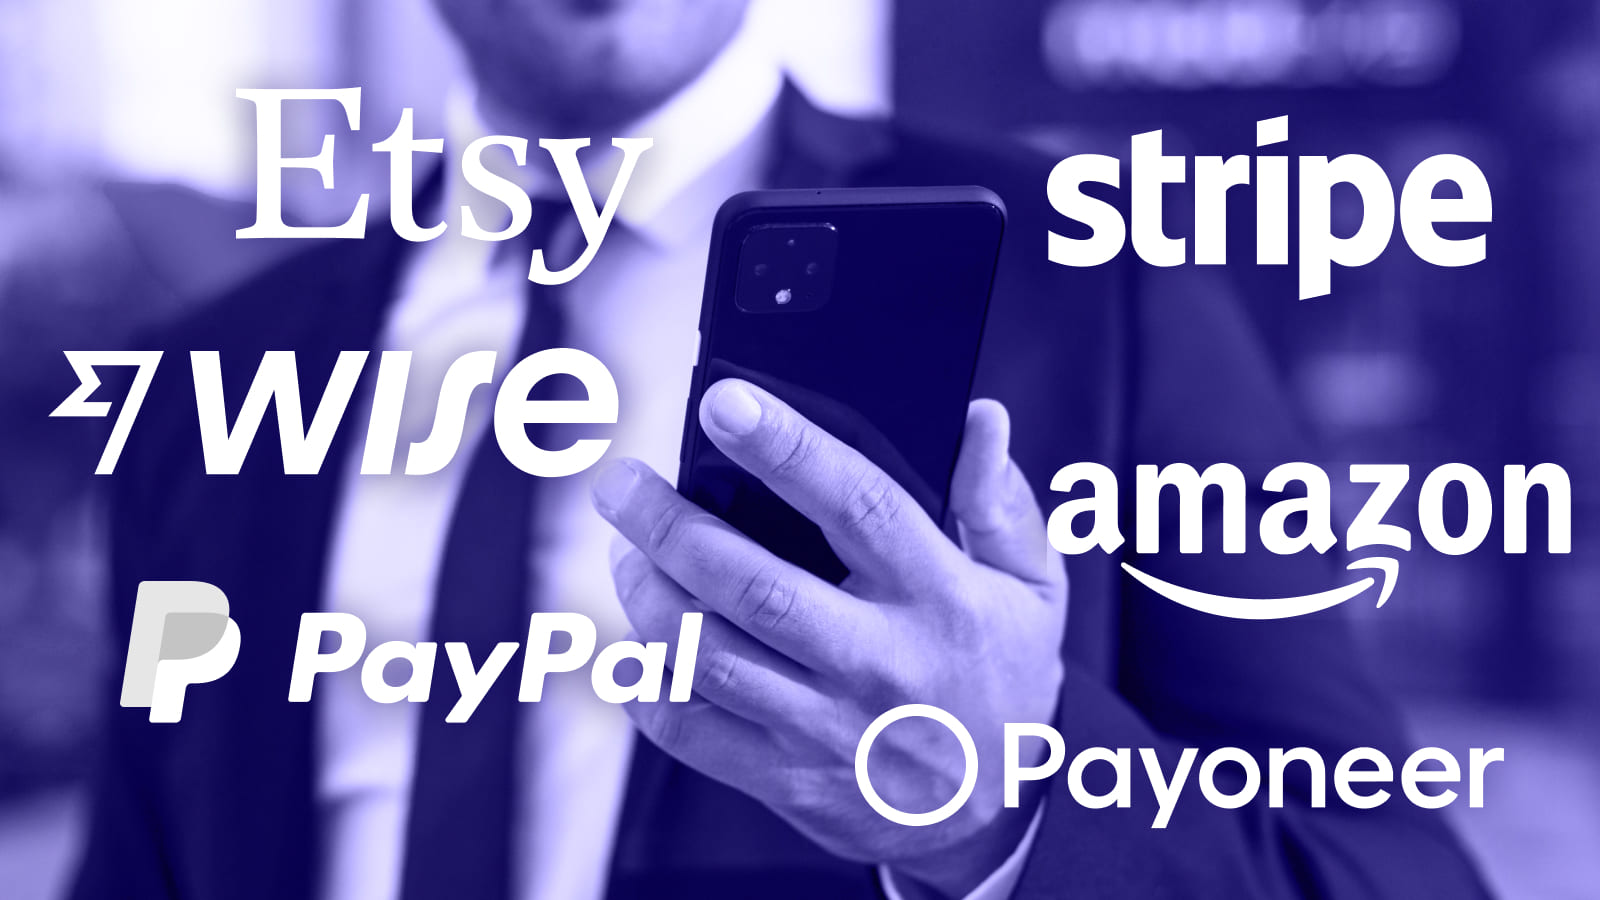 Регистрация бизнеса в США дает возможность работать с Payoneer, Stripe, Amazon и другими сервисами